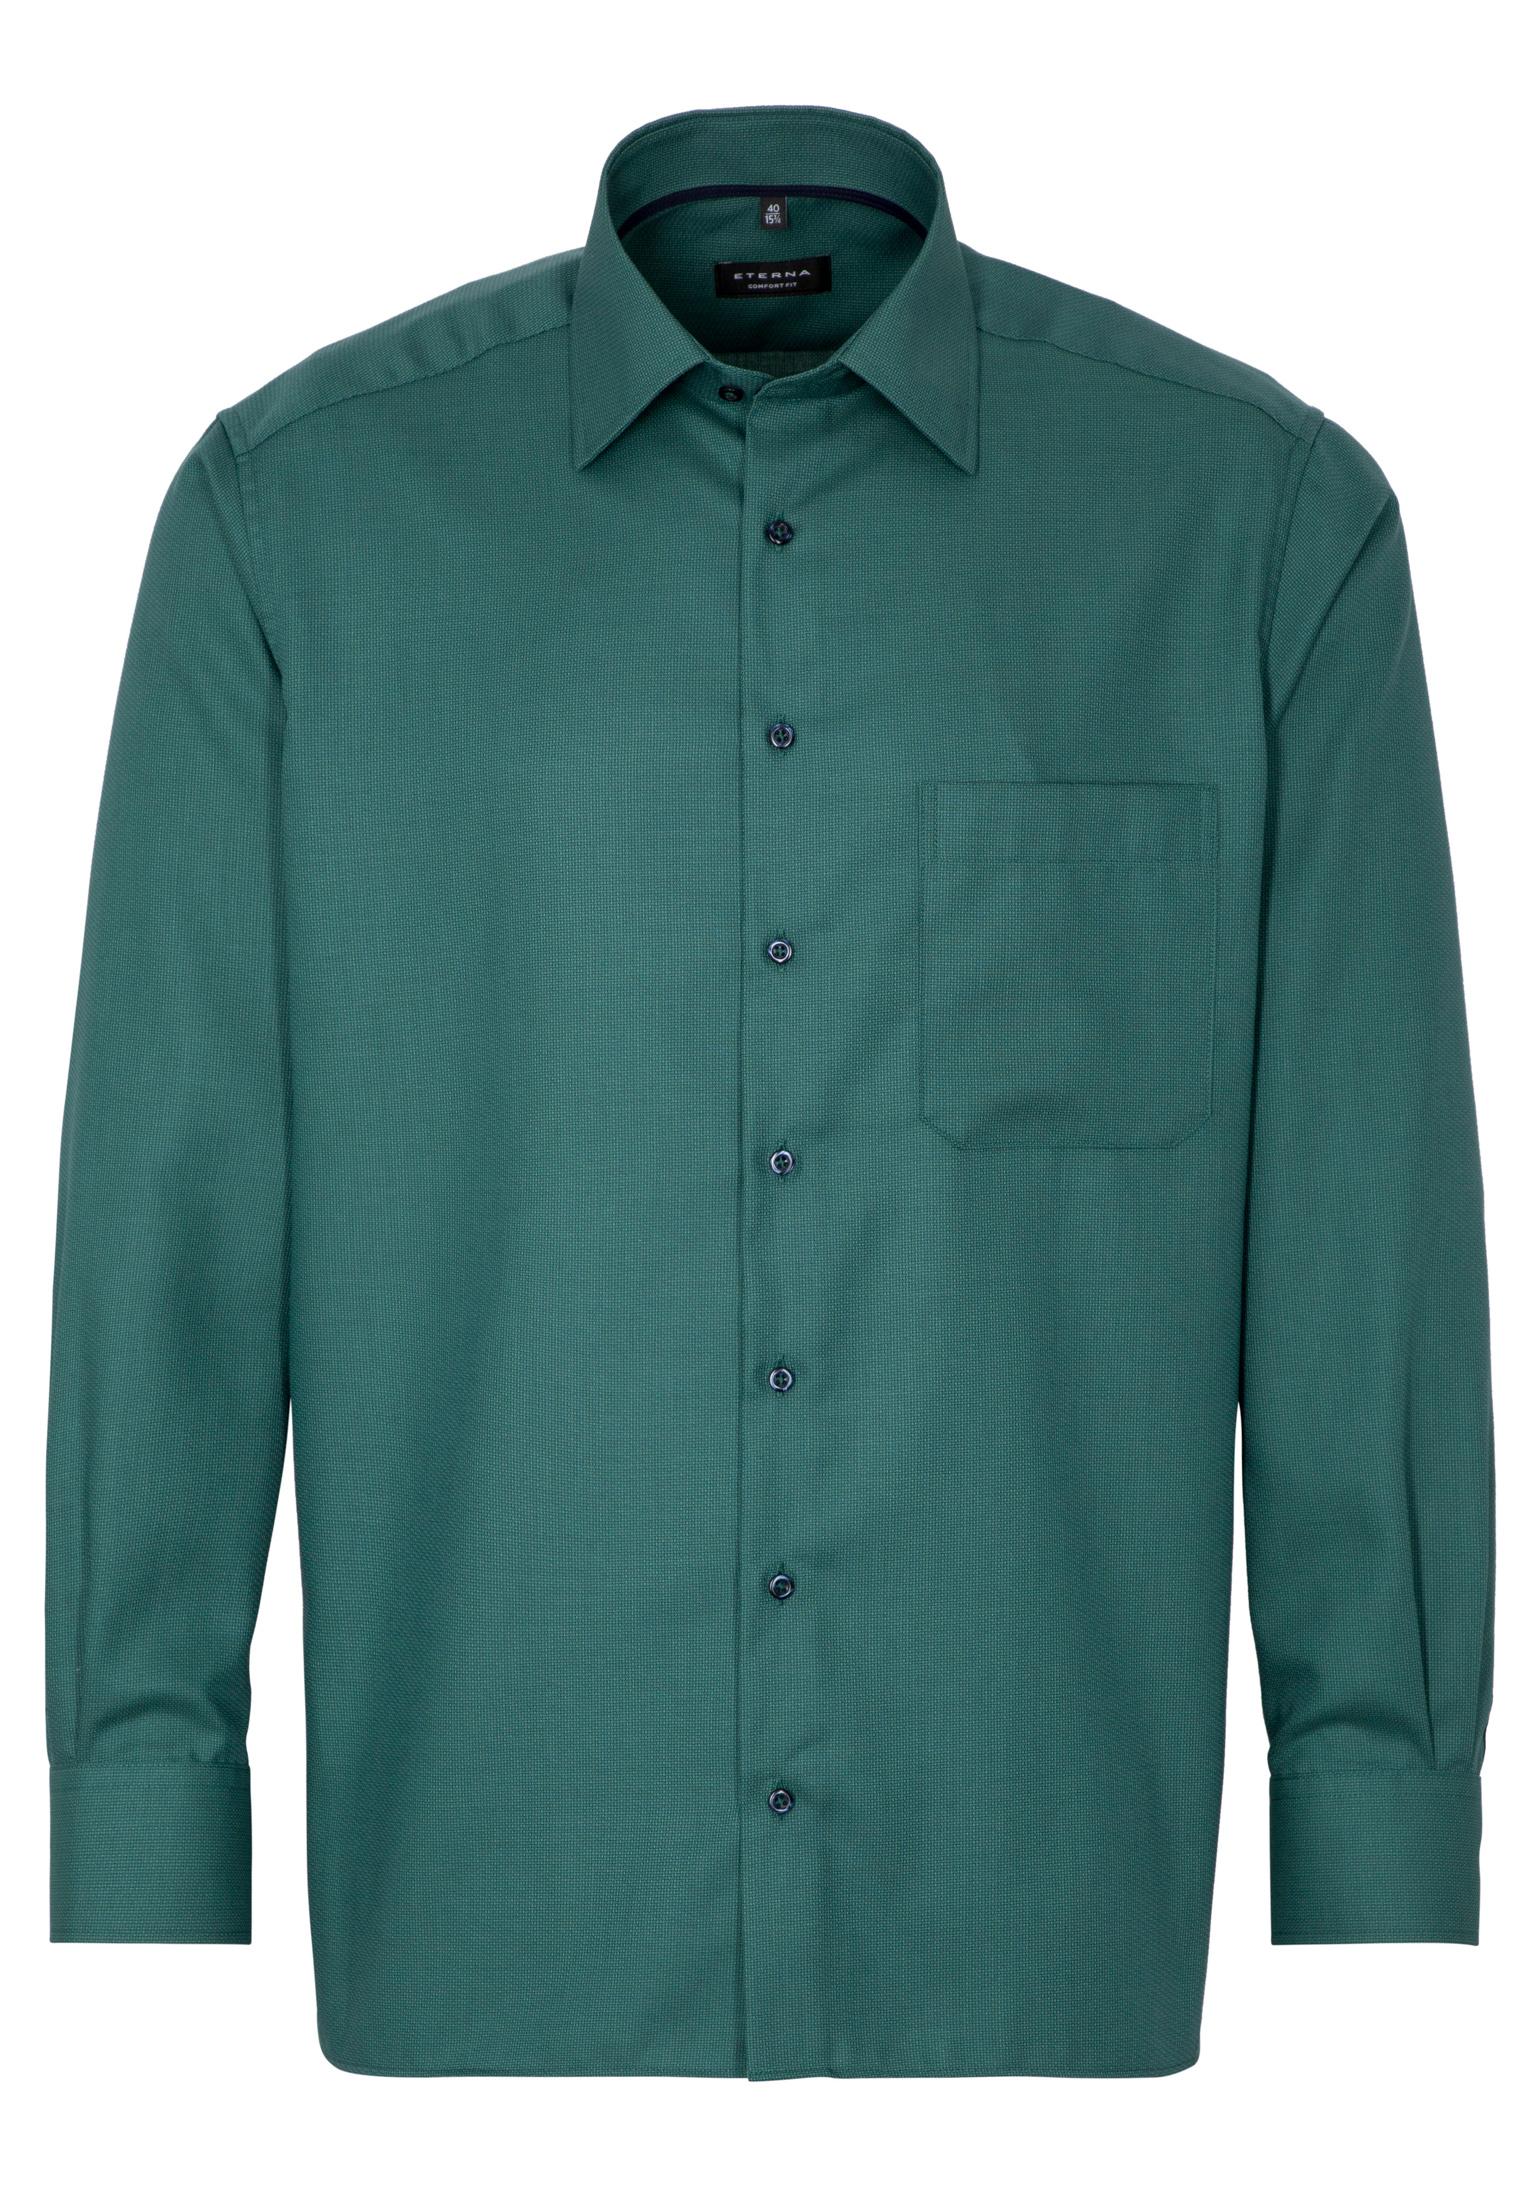 Мужская рубашка ETERNA, зеленая, цвет зеленый, размер 48 - фото 6